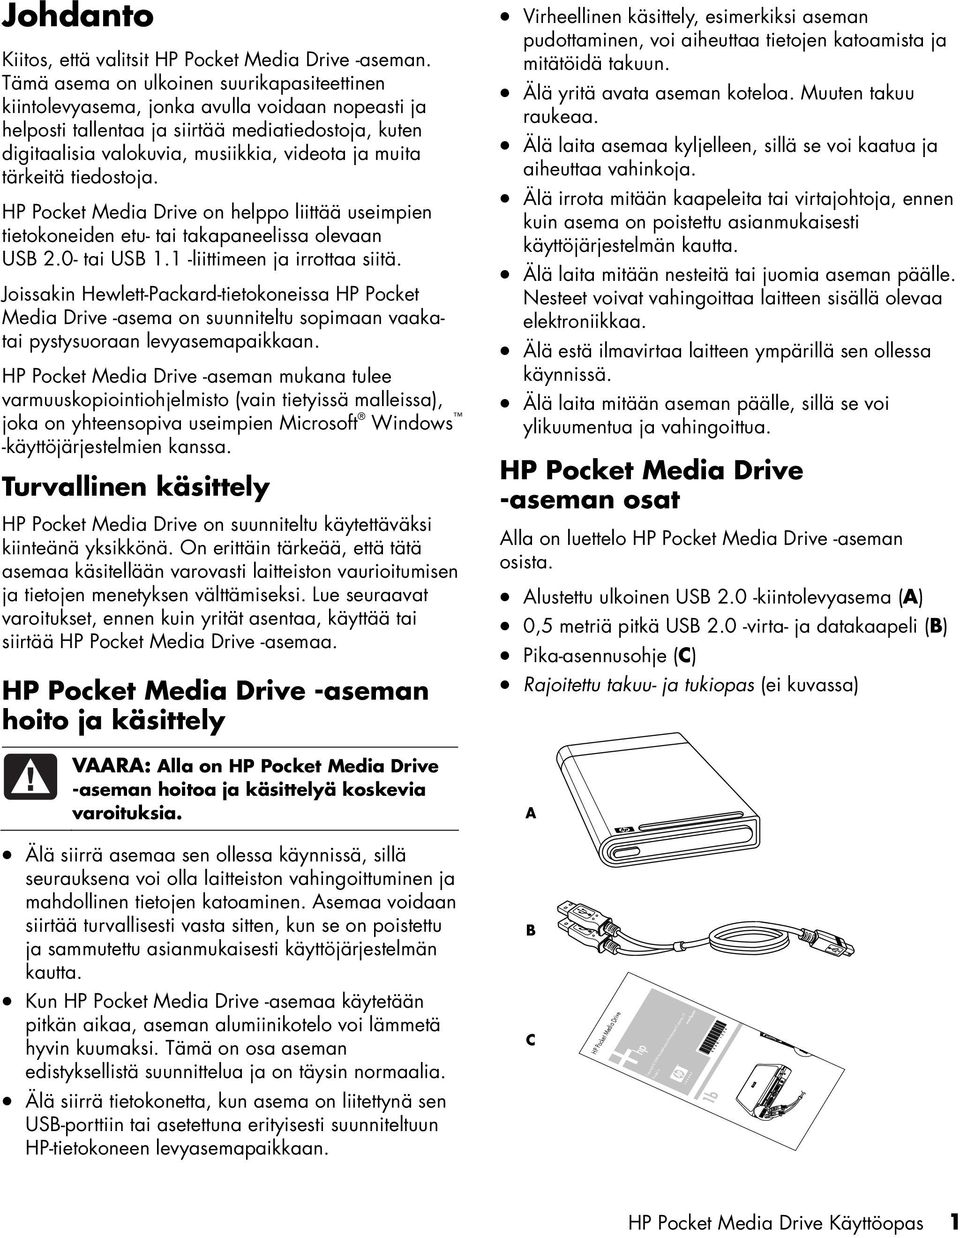 tärkeitä tiedostoja. HP Pocket Media Drive on helppo liittää useimpien tietokoneiden etu- tai takapaneelissa olevaan USB 2.0- tai USB 1.1 -liittimeen ja irrottaa siitä.